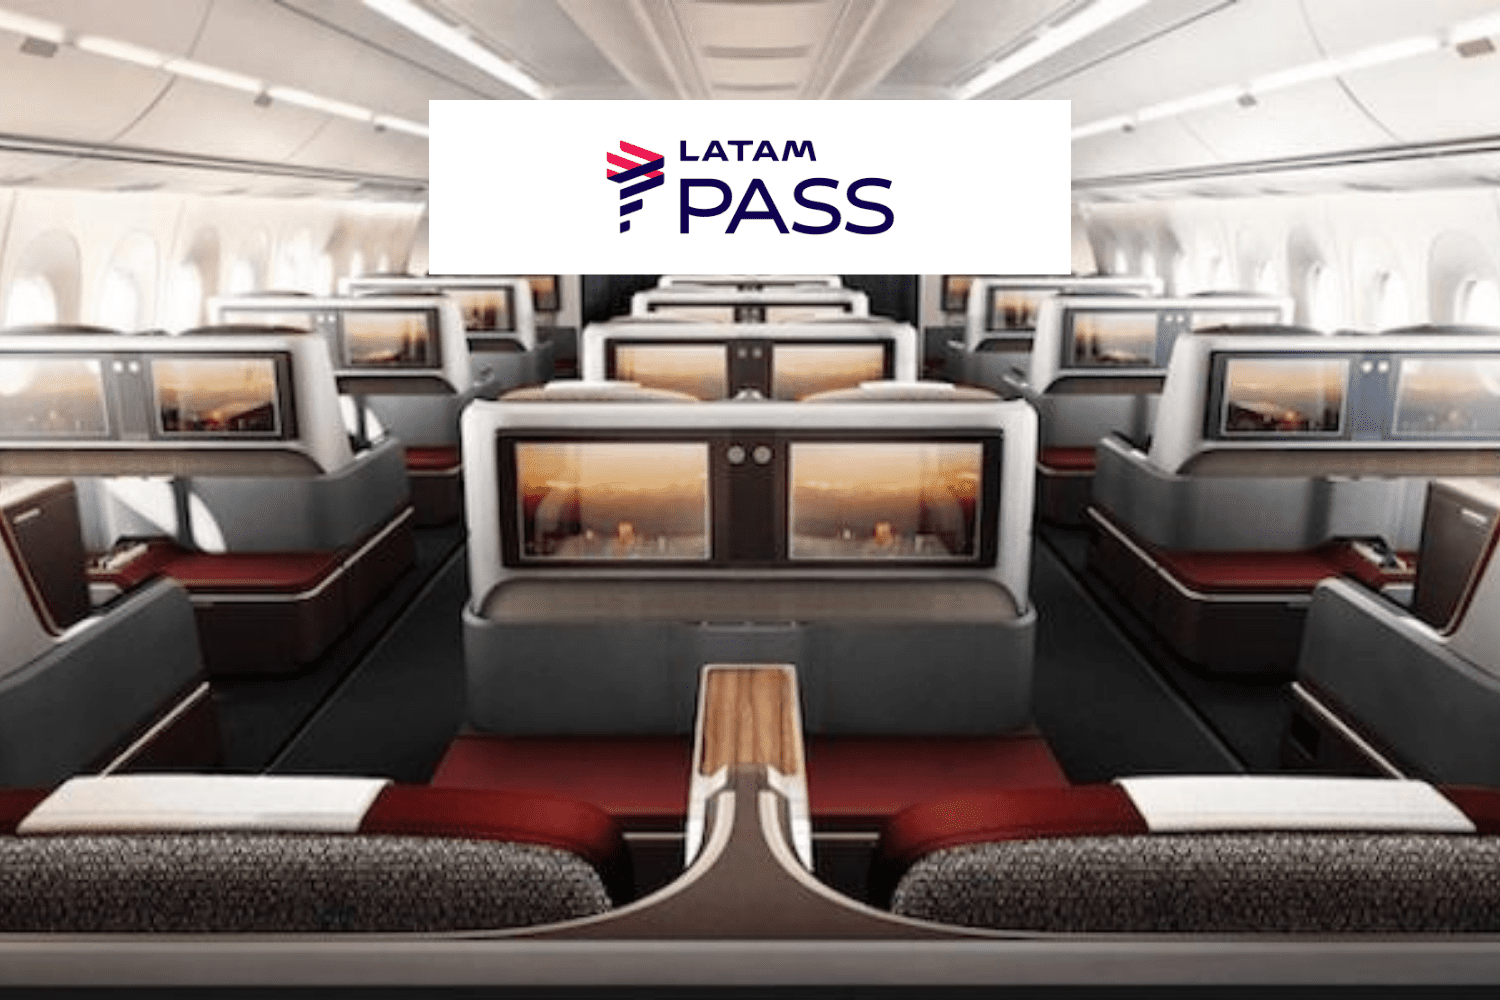 cabines de avião Latam com logo Latam Pass